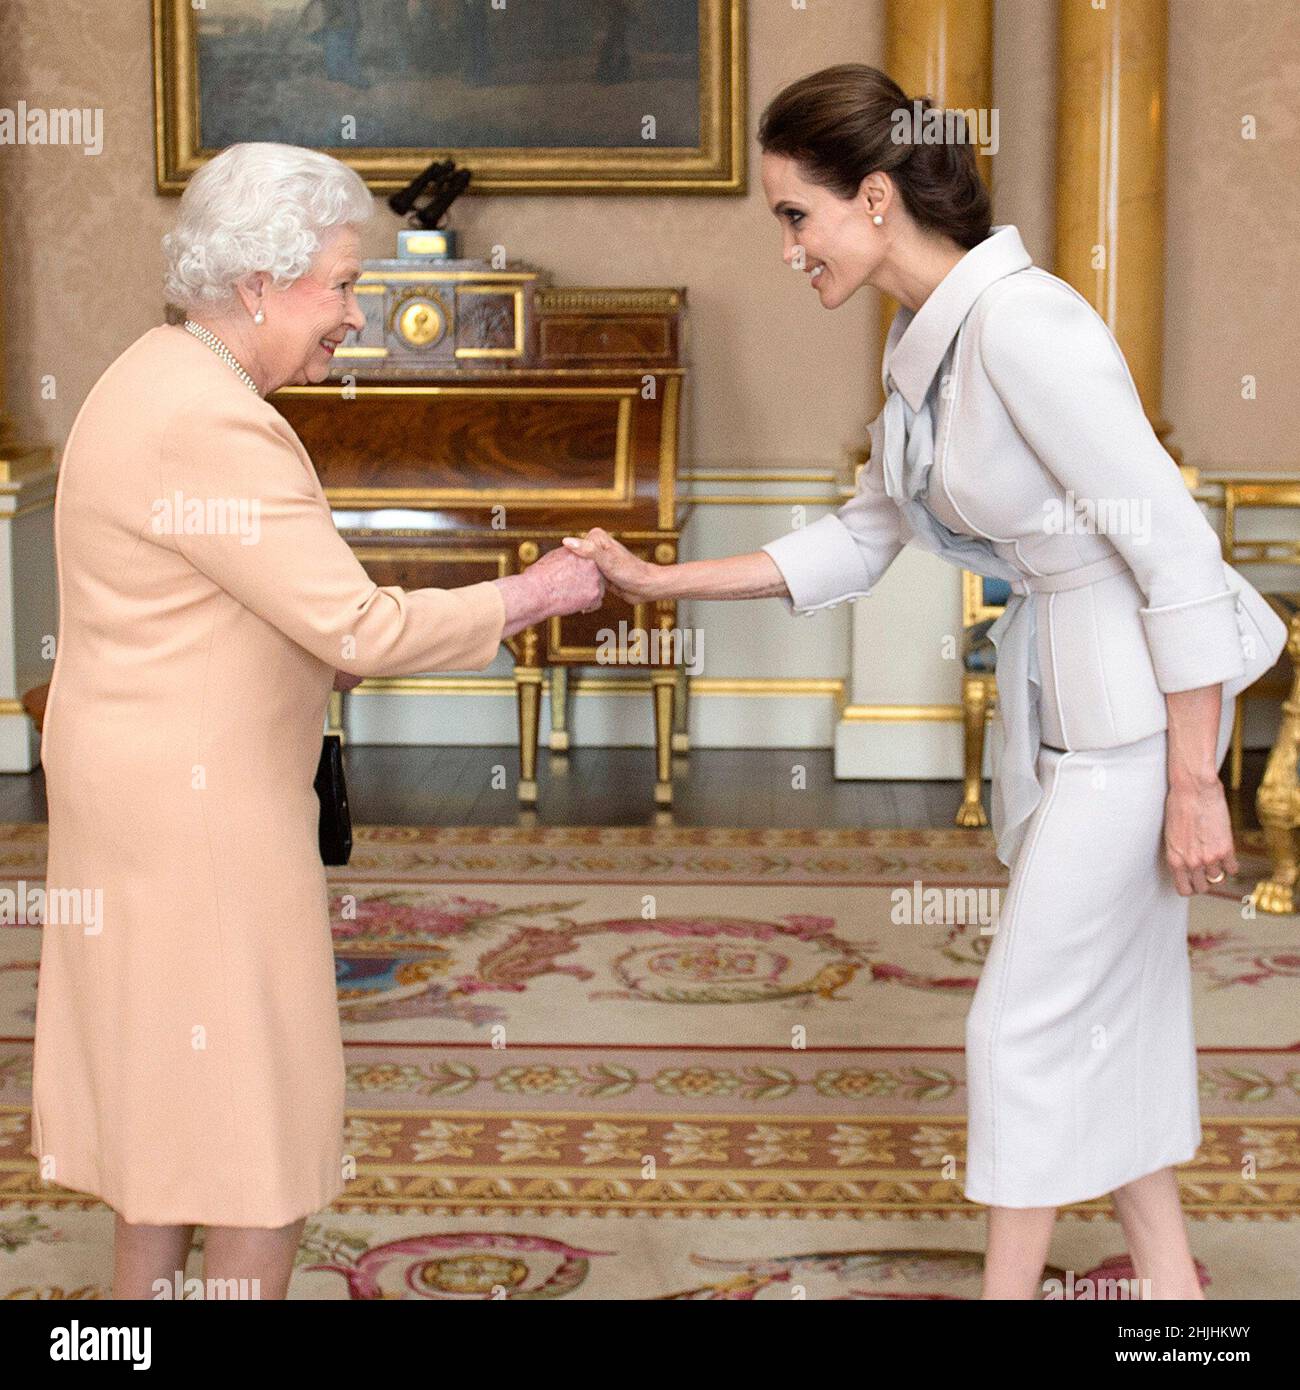 Photo du dossier datée du 10/10/14, de l'actrice Angelina Jolie (à droite), remise de l'insigne d'une Dame honoraire commandante de l'ordre le plus distingué de St Michael et St George par la reine Elizabeth II dans la salle 1844 du Palais de Buckingham, à Londres.Date de publication : dimanche 30 janvier 2022. Banque D'Images